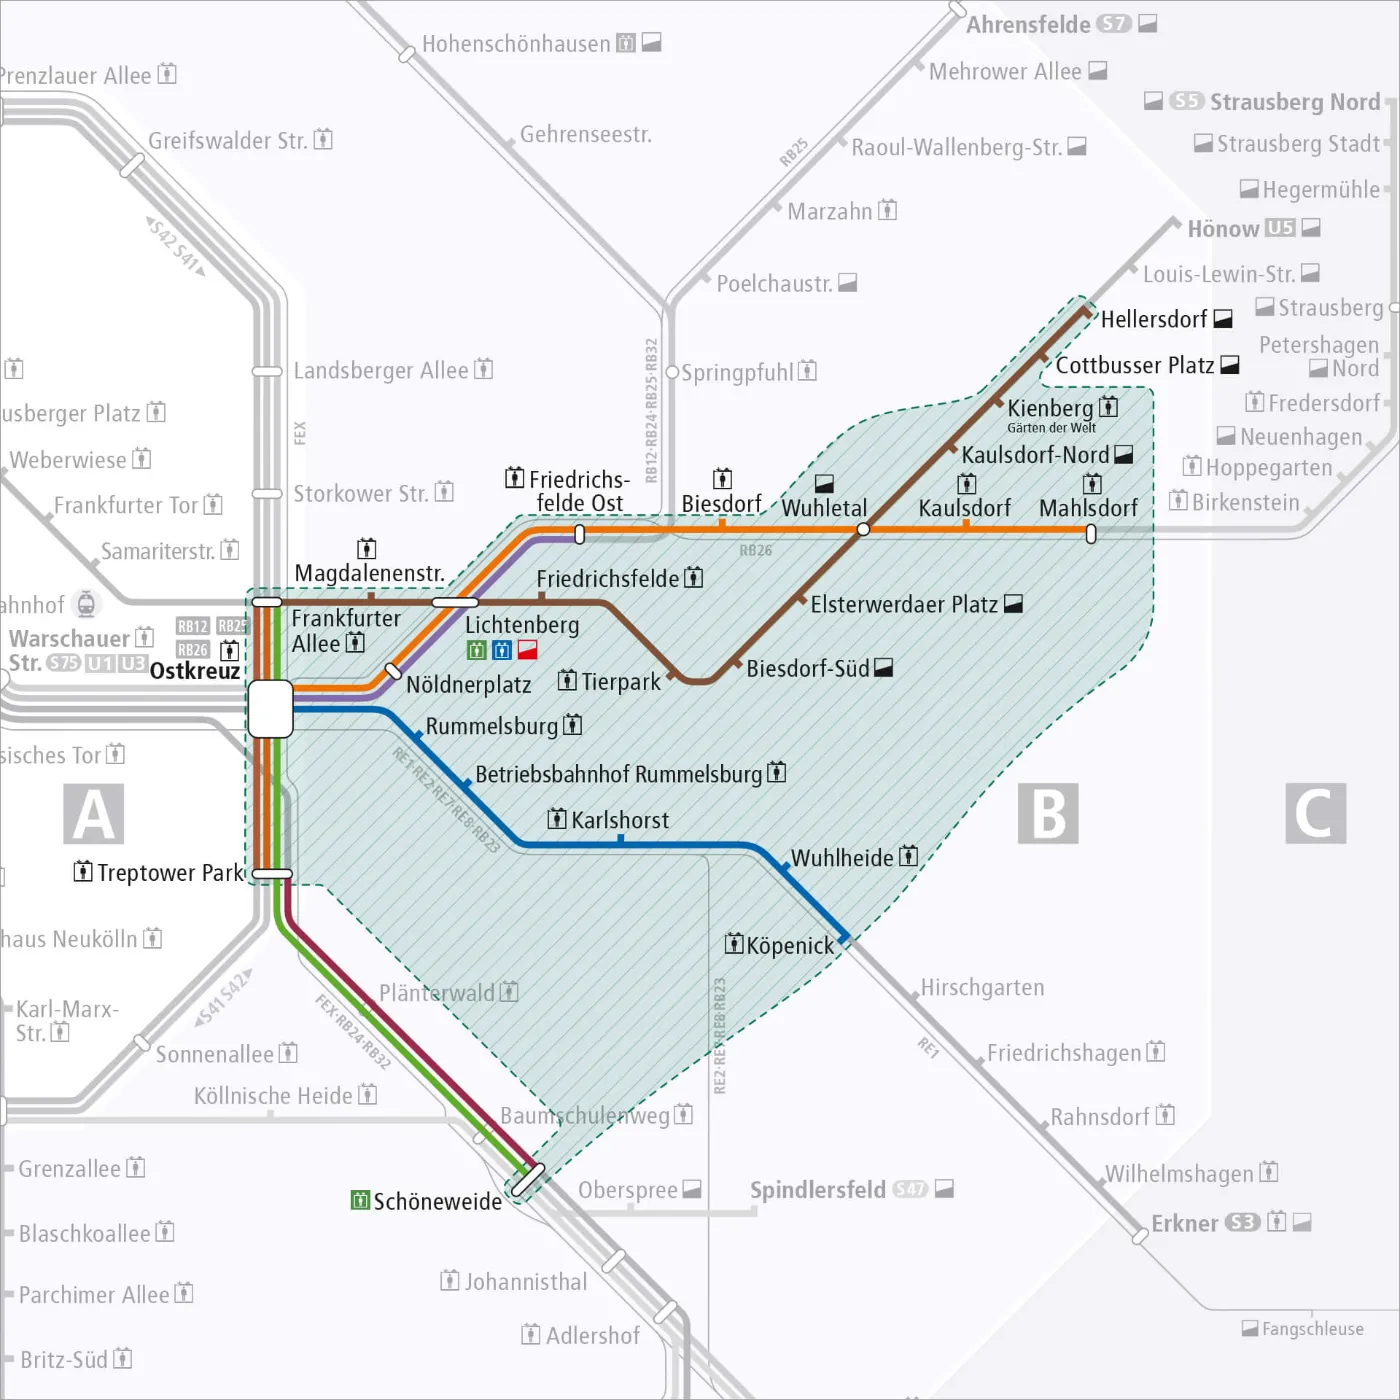 Teilgebiet von Berlin als vereinfachte Karte. Im Osten der Stadt ist das Bediengebiet der Flexiblen Fahrt des BVg Muva gelb markiert.